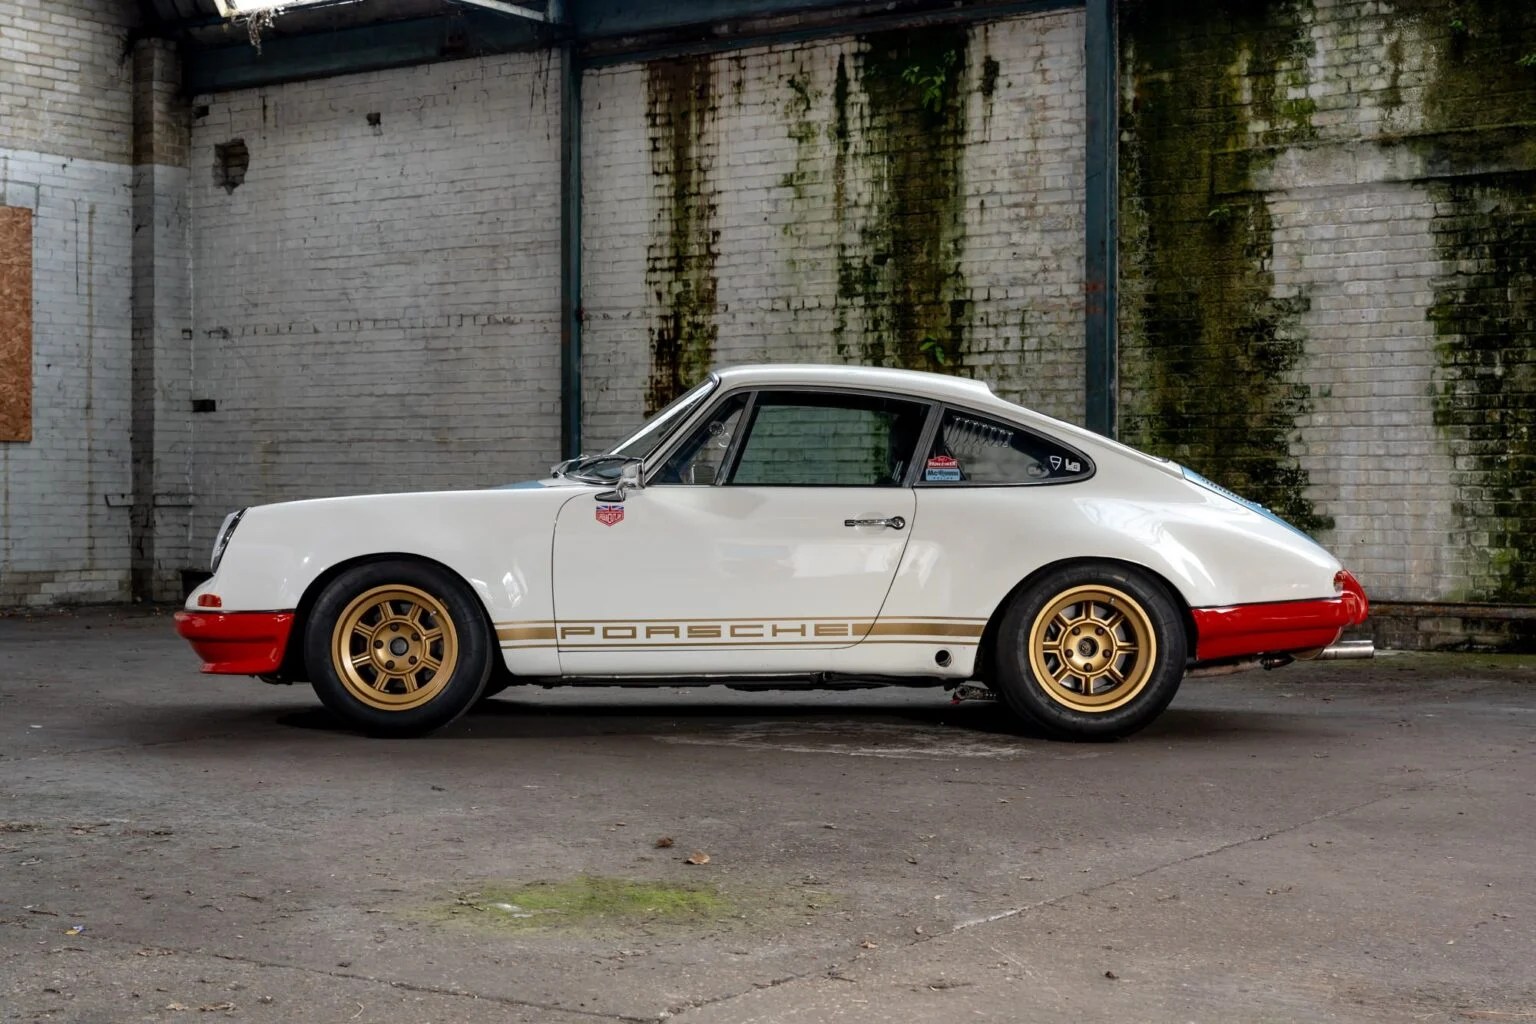 1972 Porsche 911 STR II belonging to Magnus Walker just sold